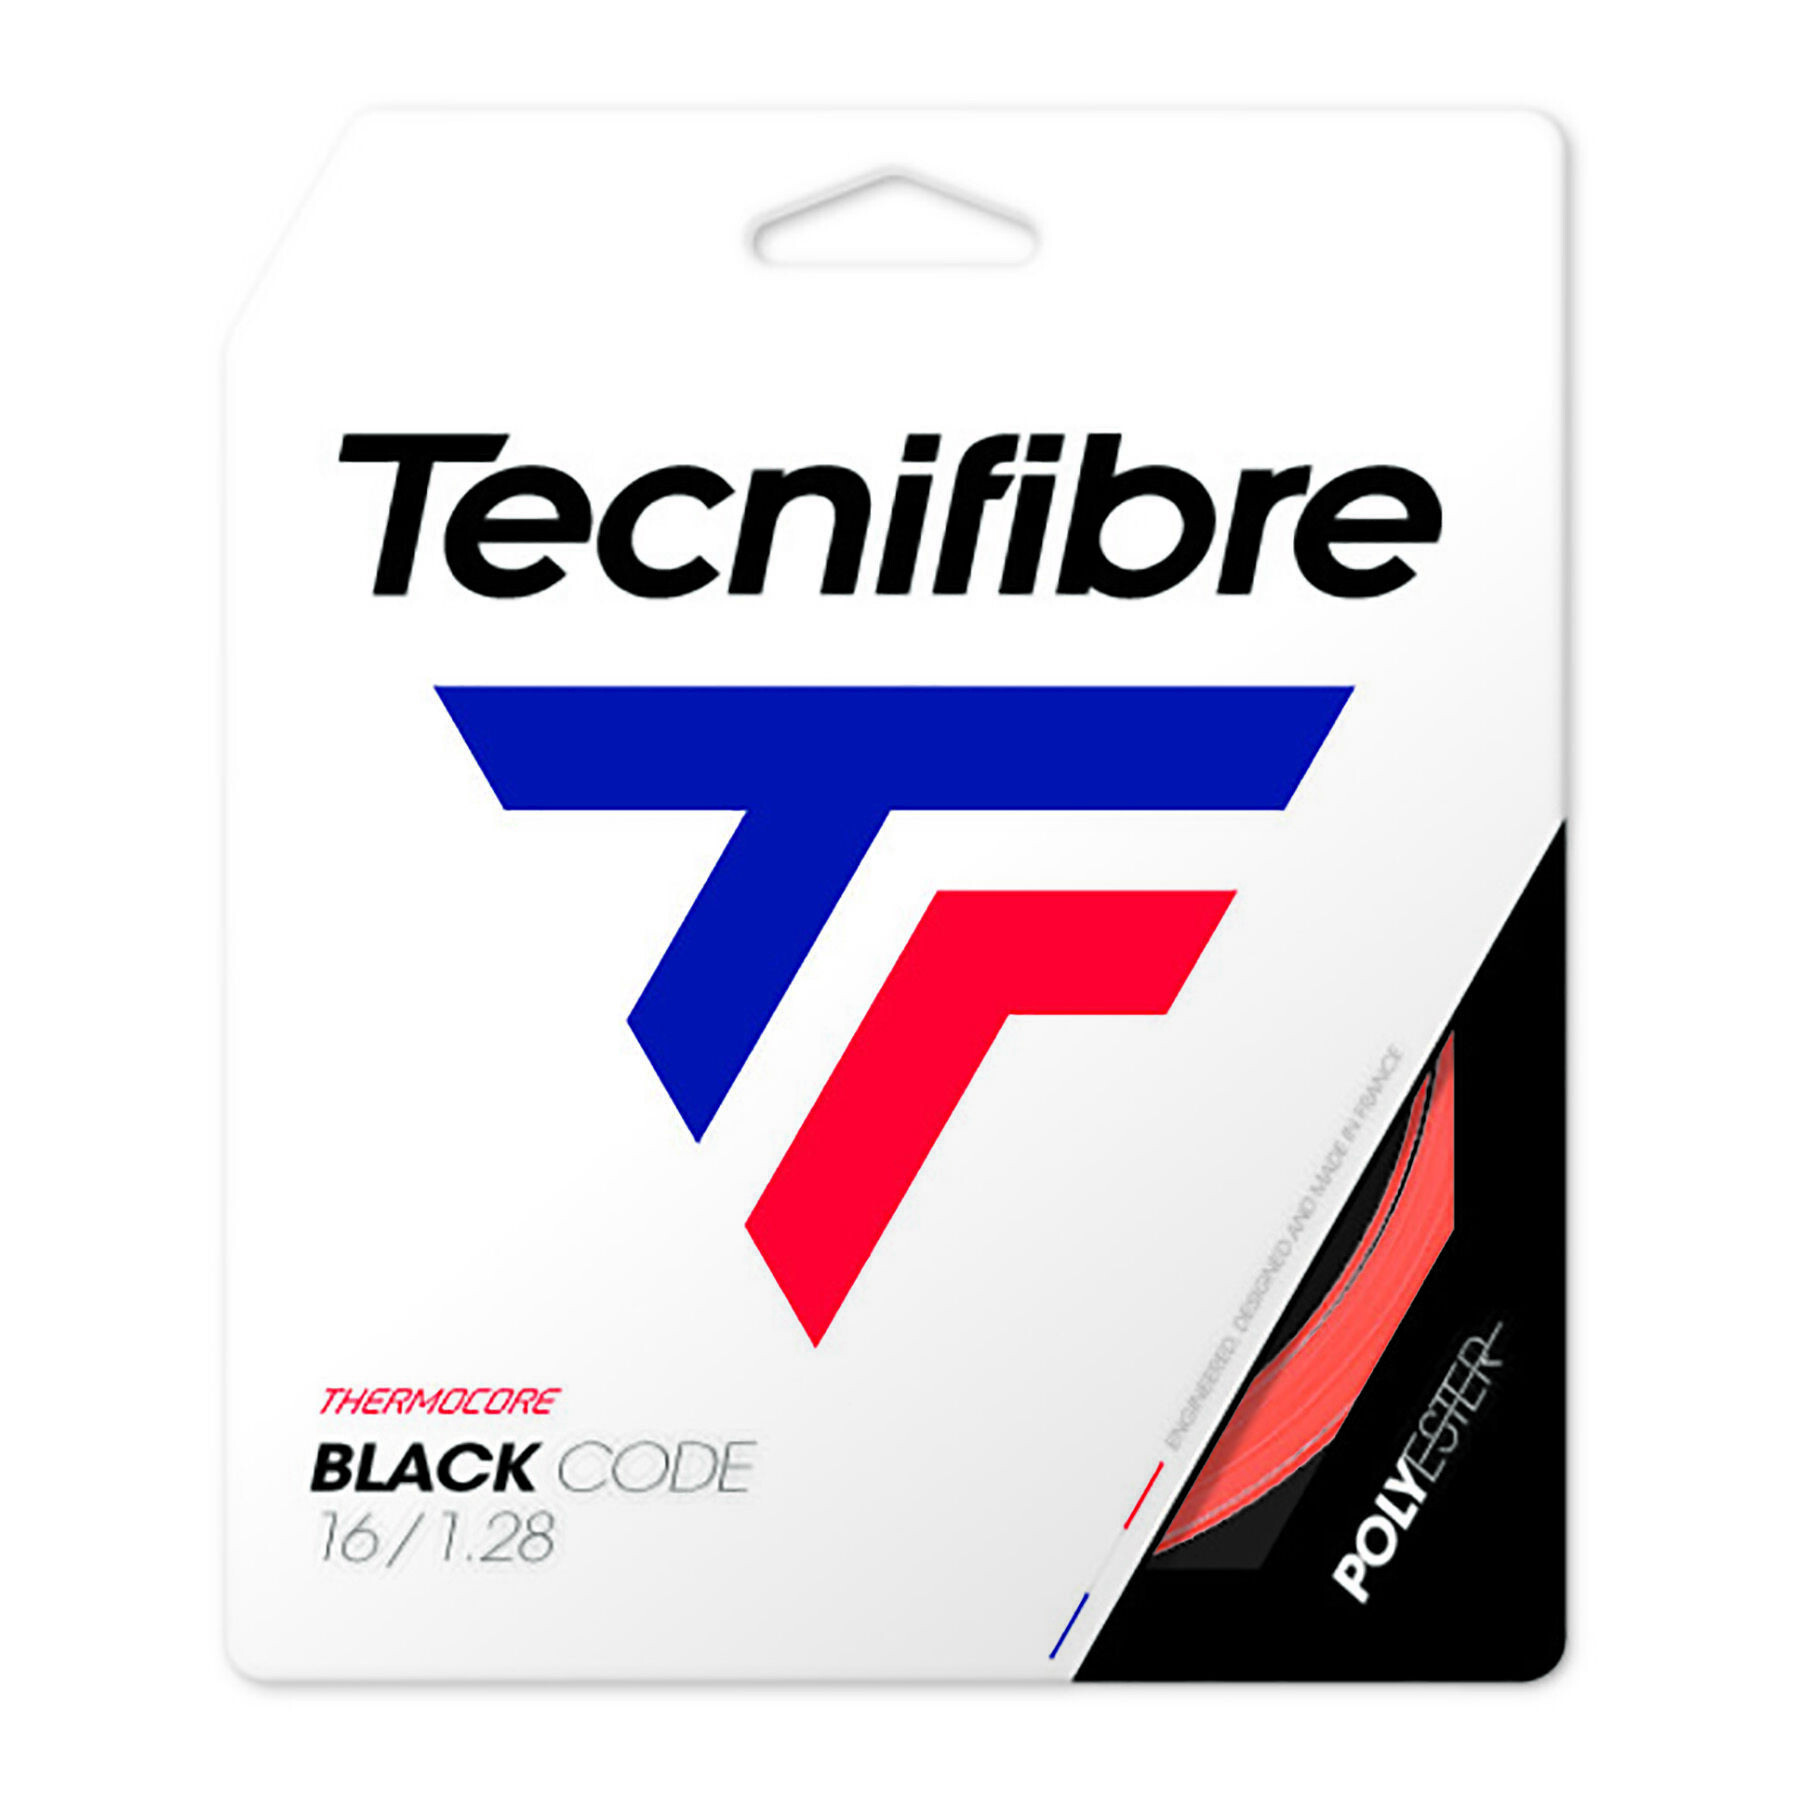 Cordas de ténis Tecnifibre Black Code 12 m